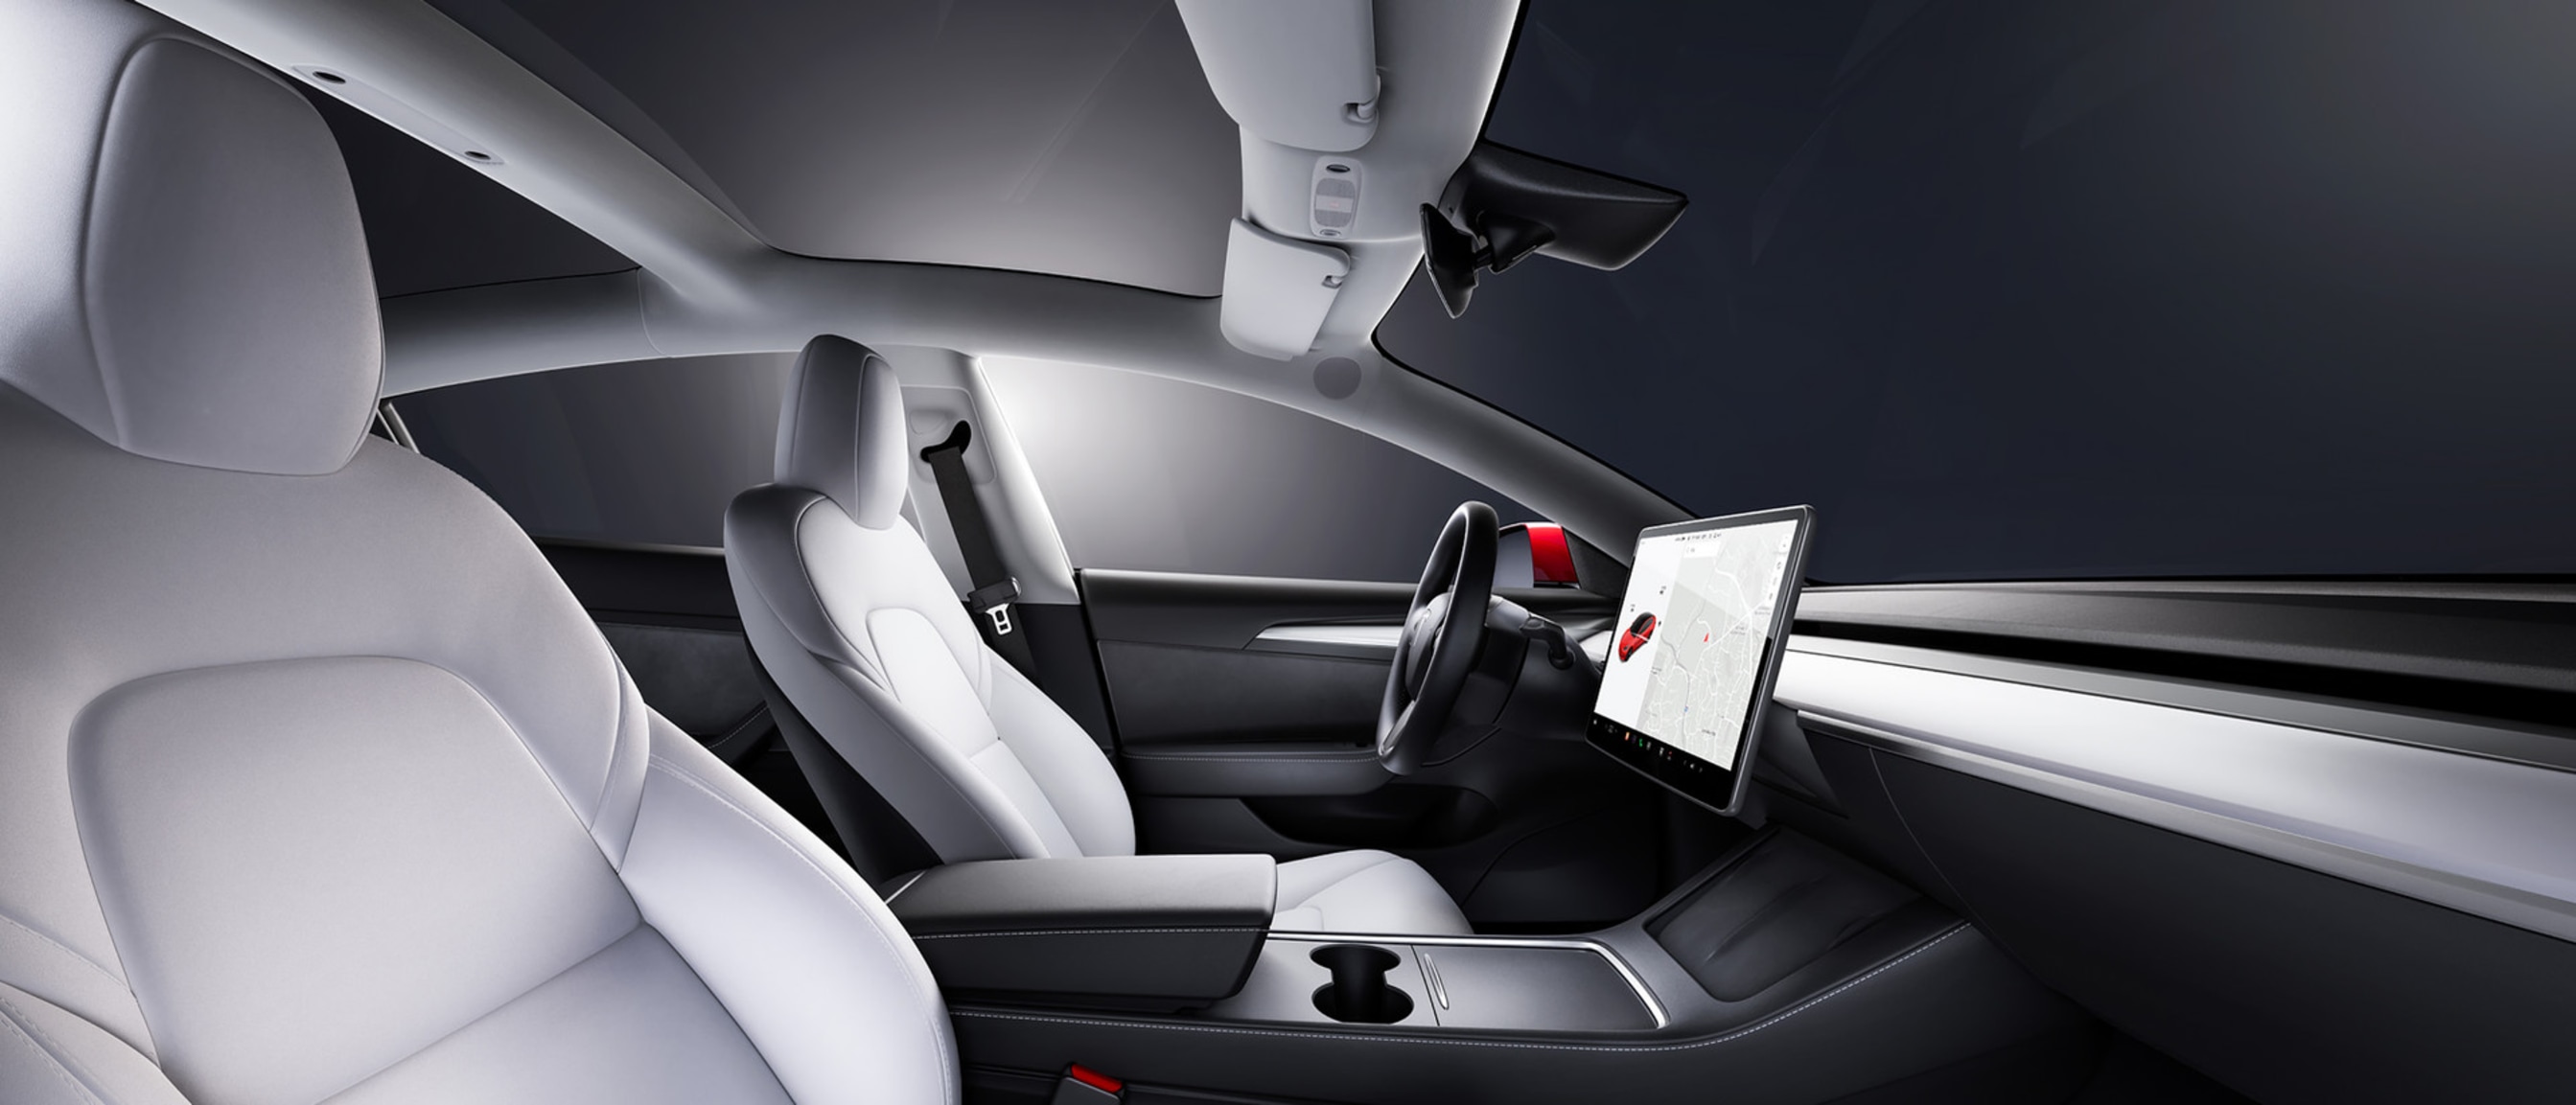 Pohled na přední sedadlo uvnitř vozu Model 3 s bílým interiérem